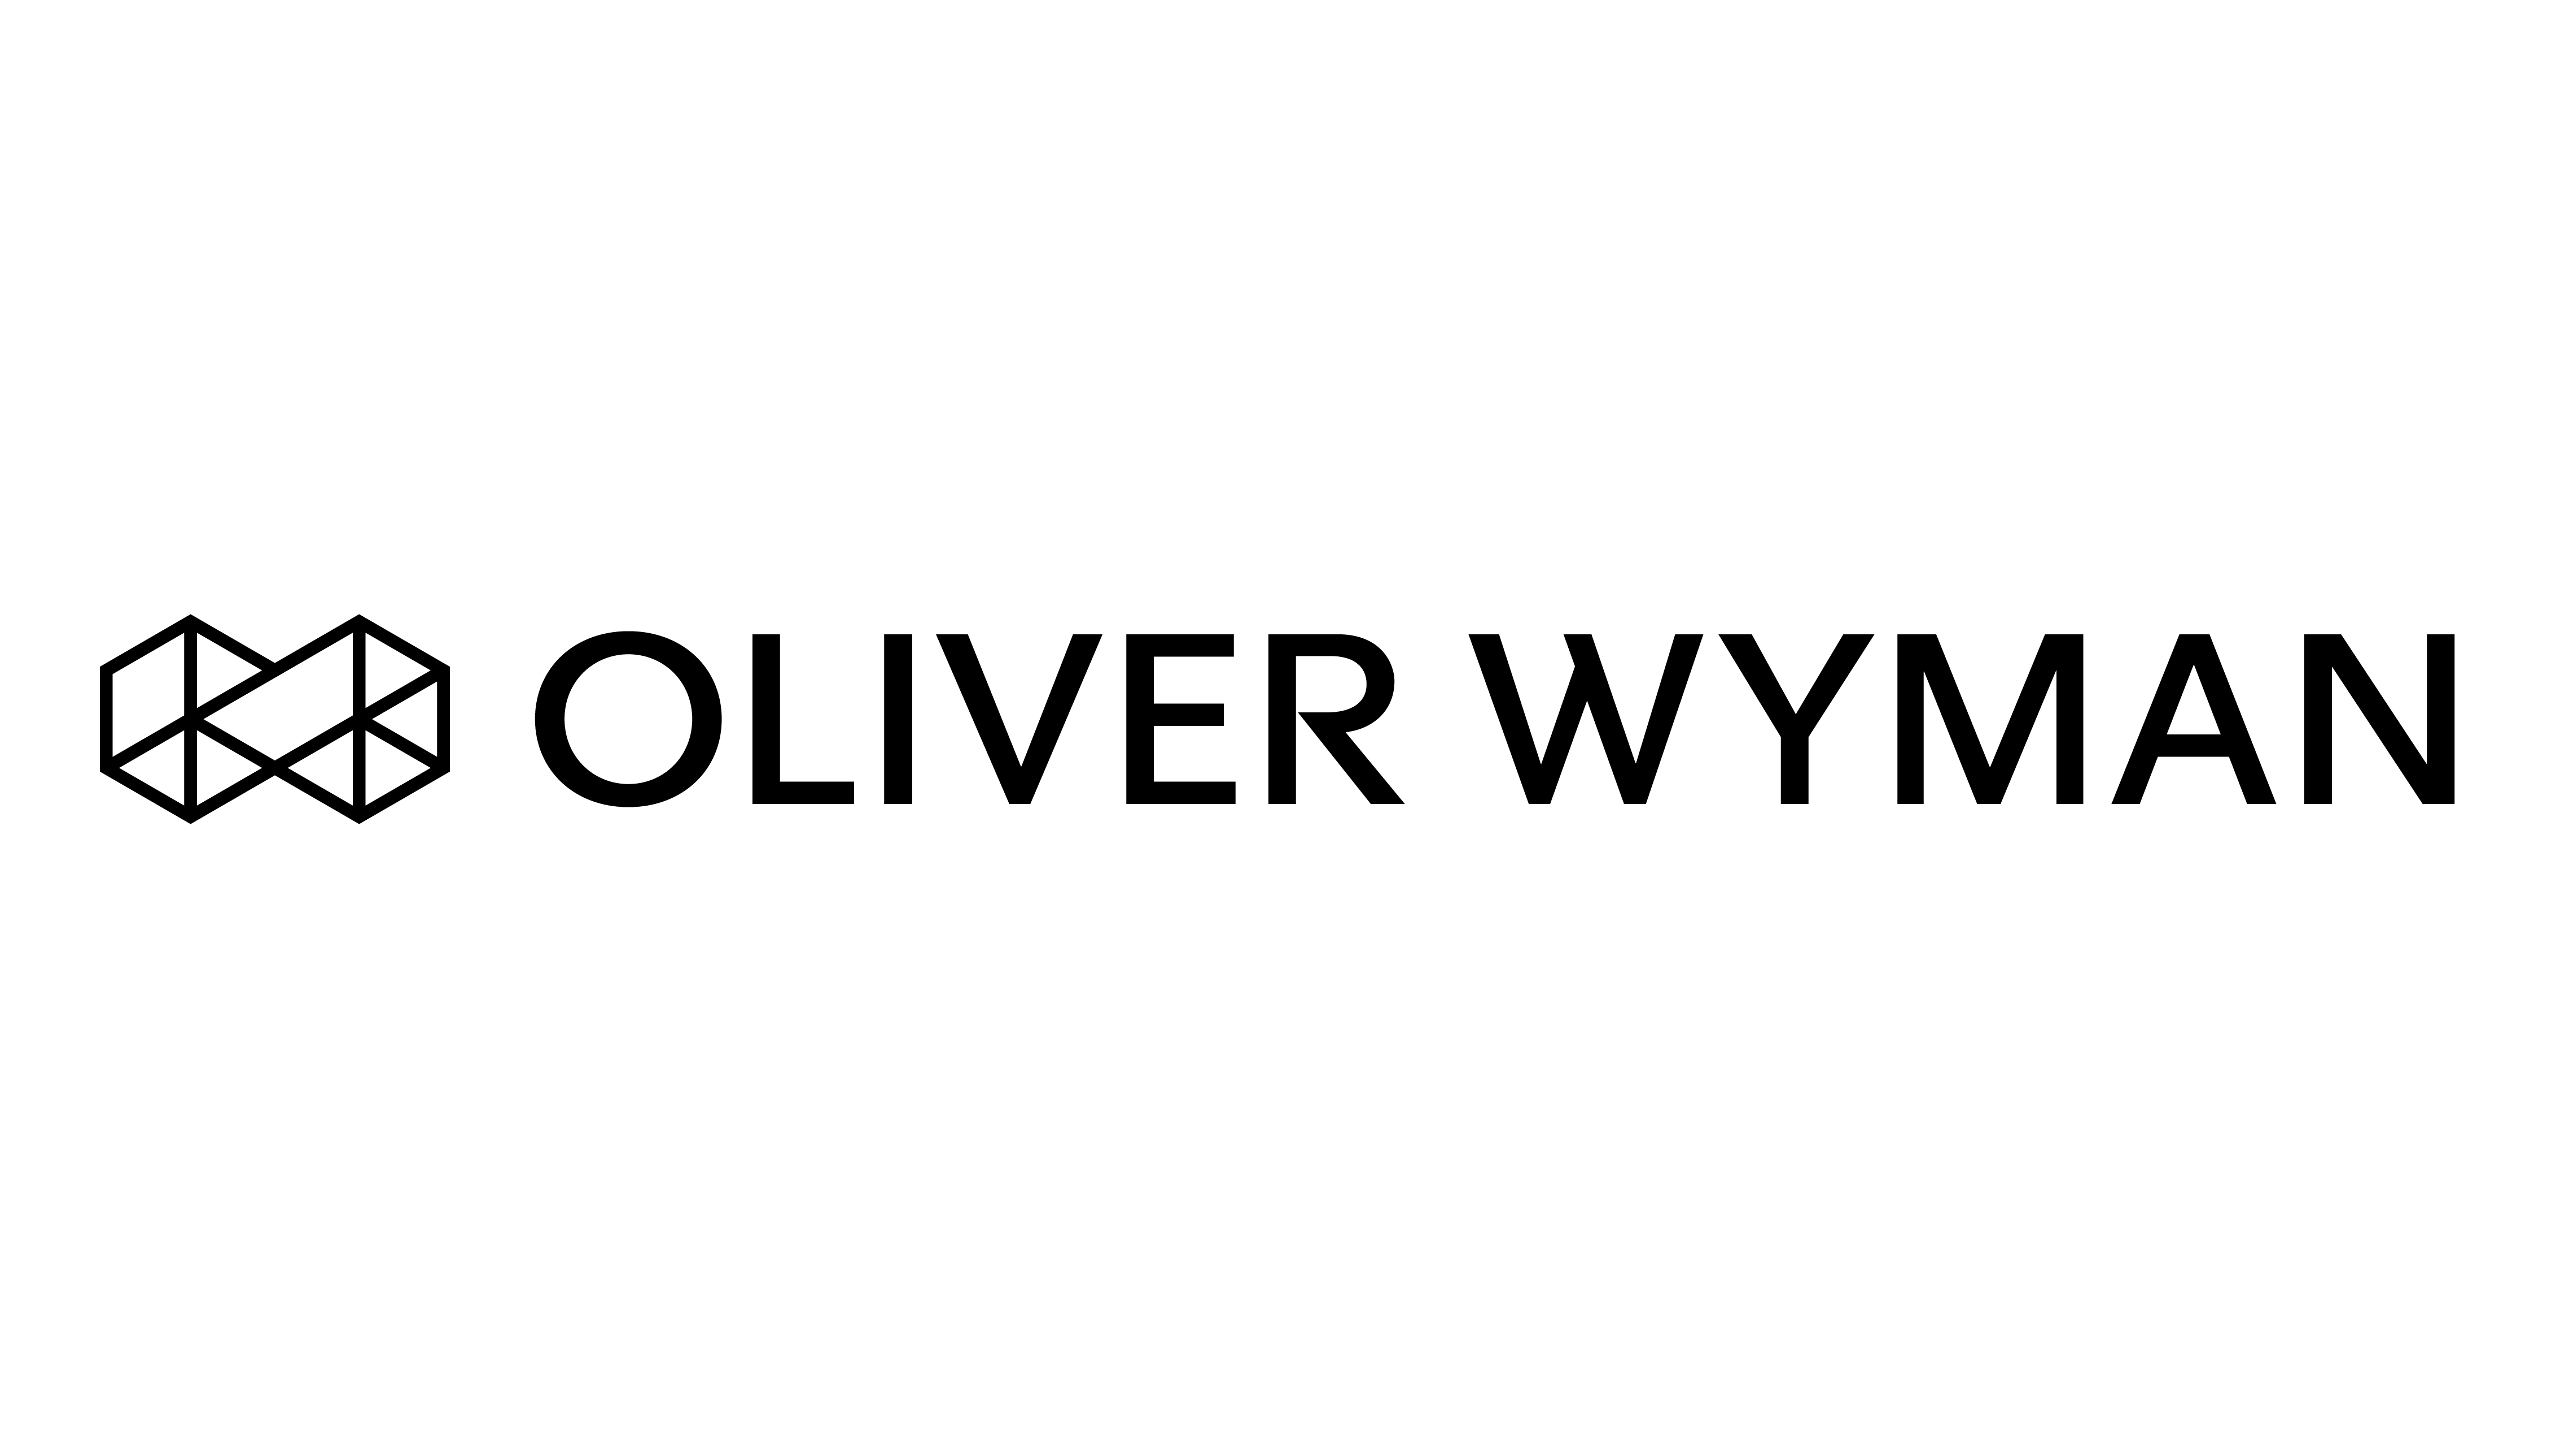 oliver-wyman